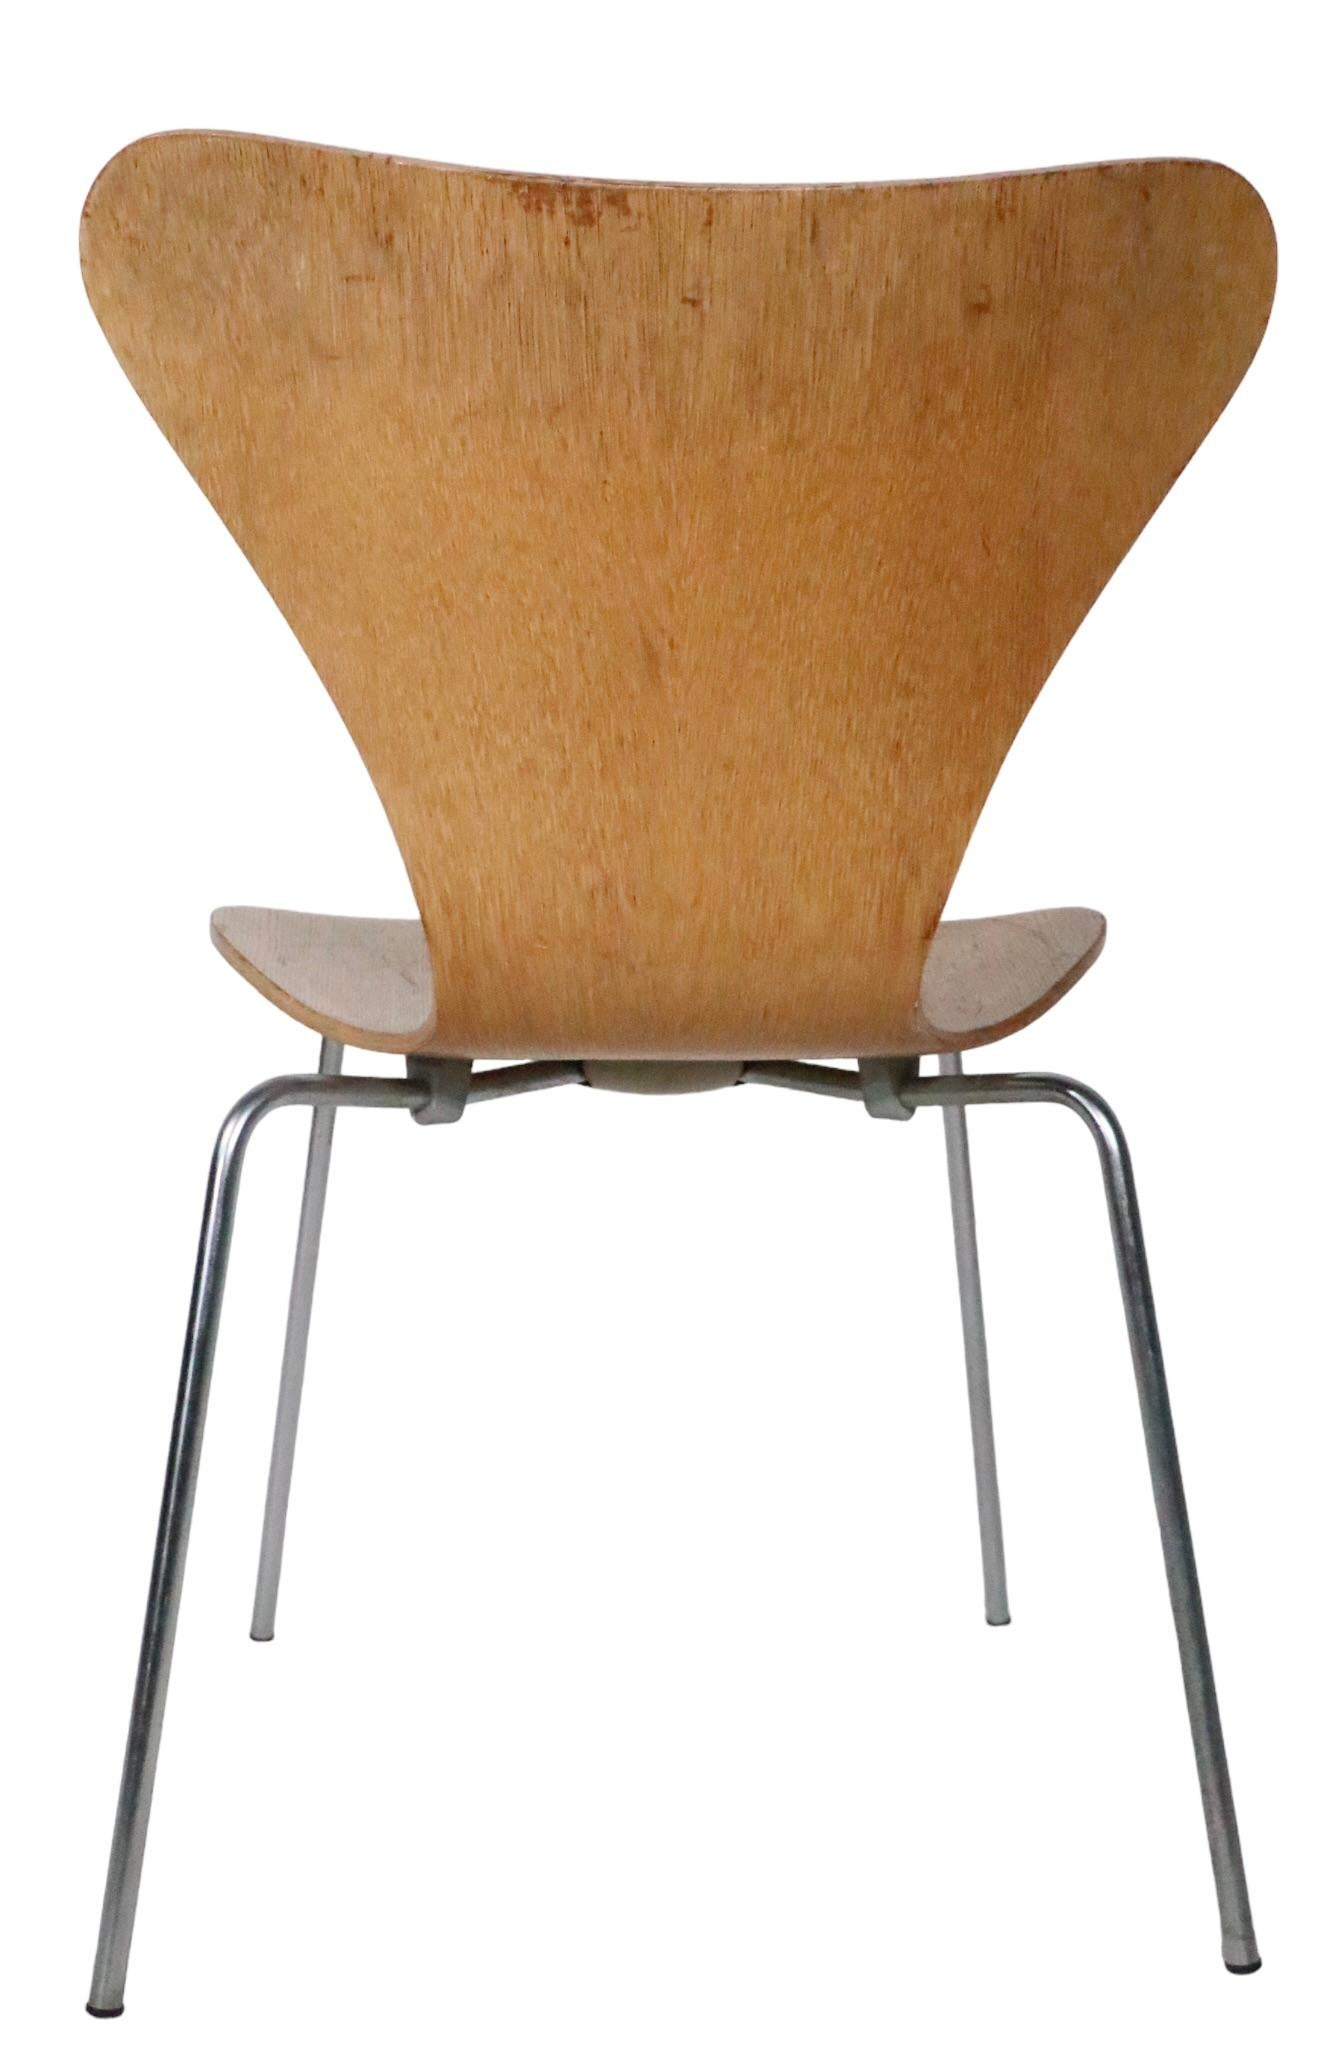 Chrome Arne Jacobsen Fritz Hansen Series 7 Butterfly Chair in Oak Veneer, circa 1960s For Sale